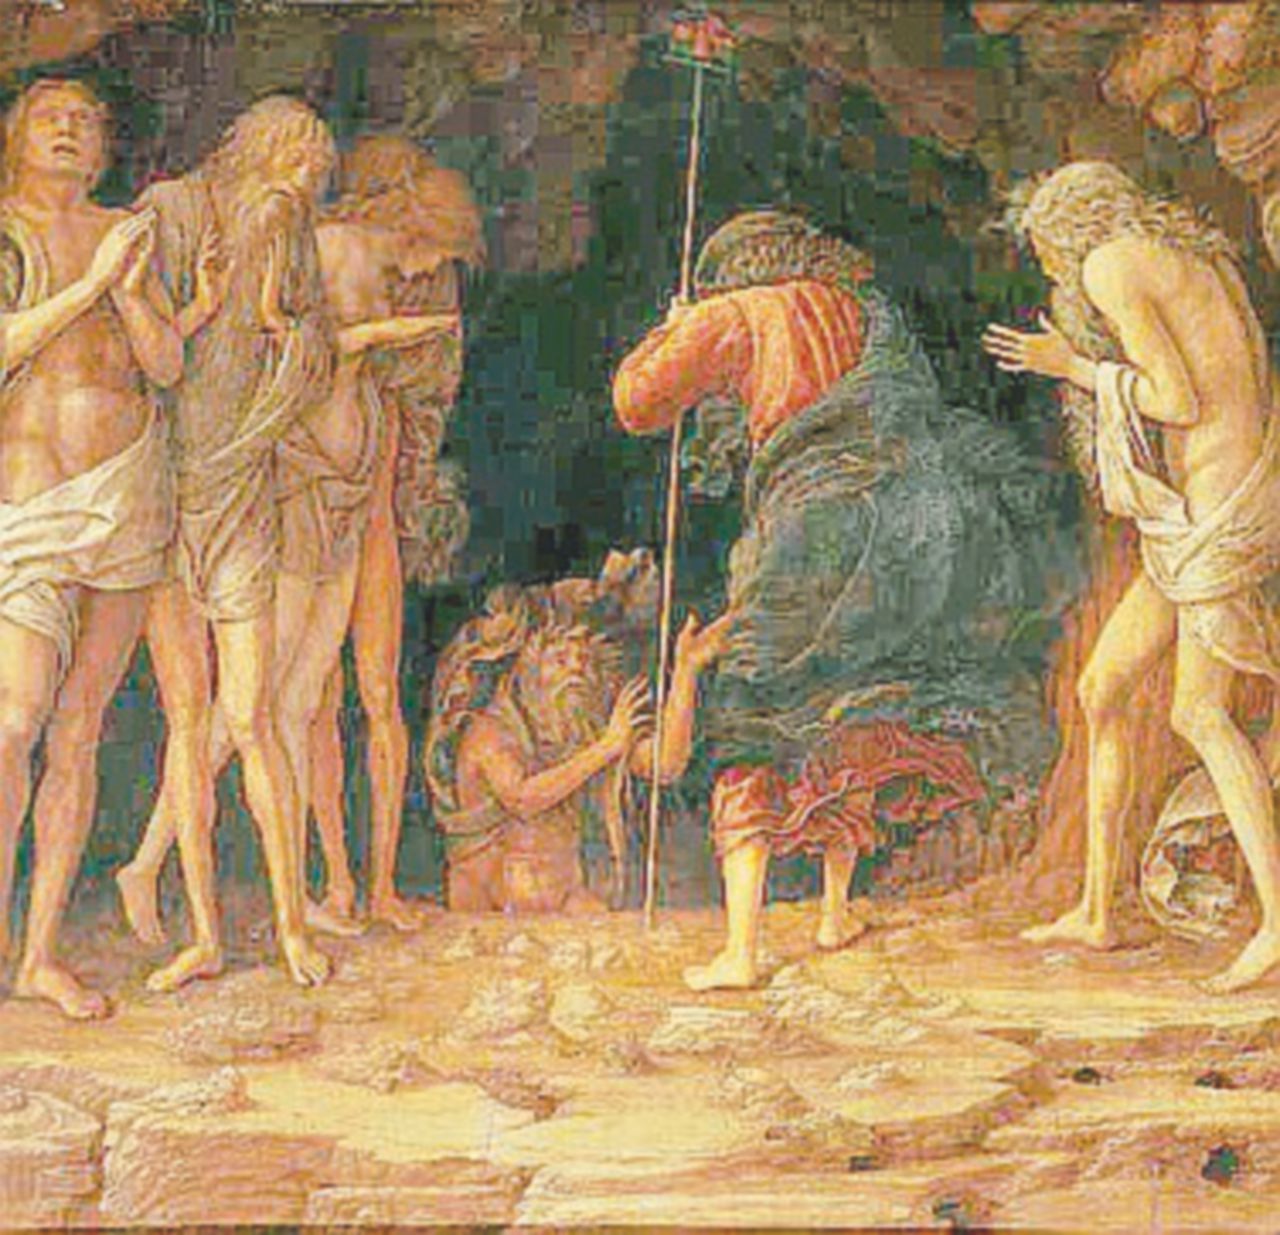 Copertina di Mantegna risorto: era rimasto in magazzino